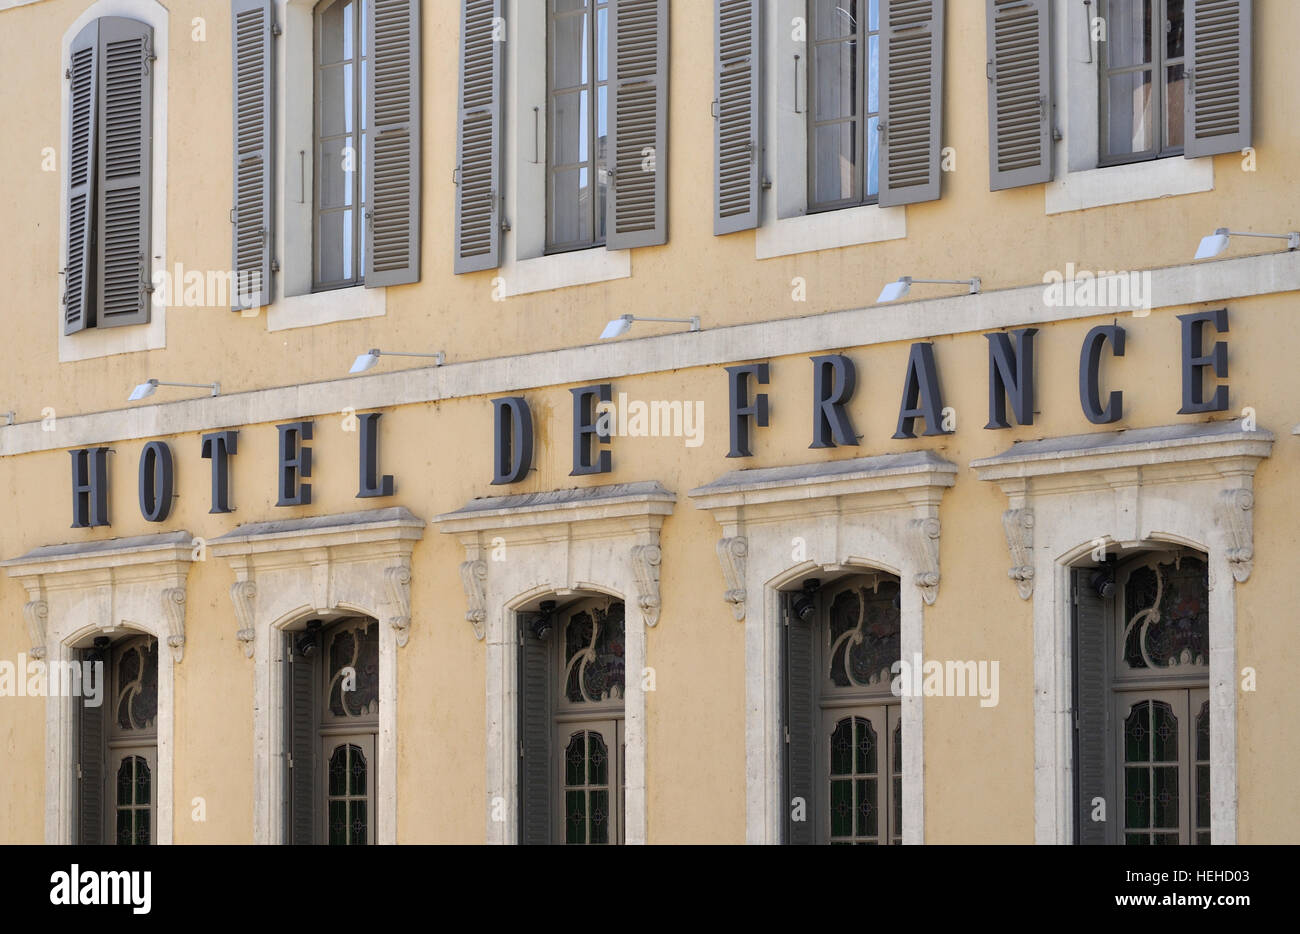 Façade de l'Hôtel de France à la place de la libération, Auch, France. Banque D'Images